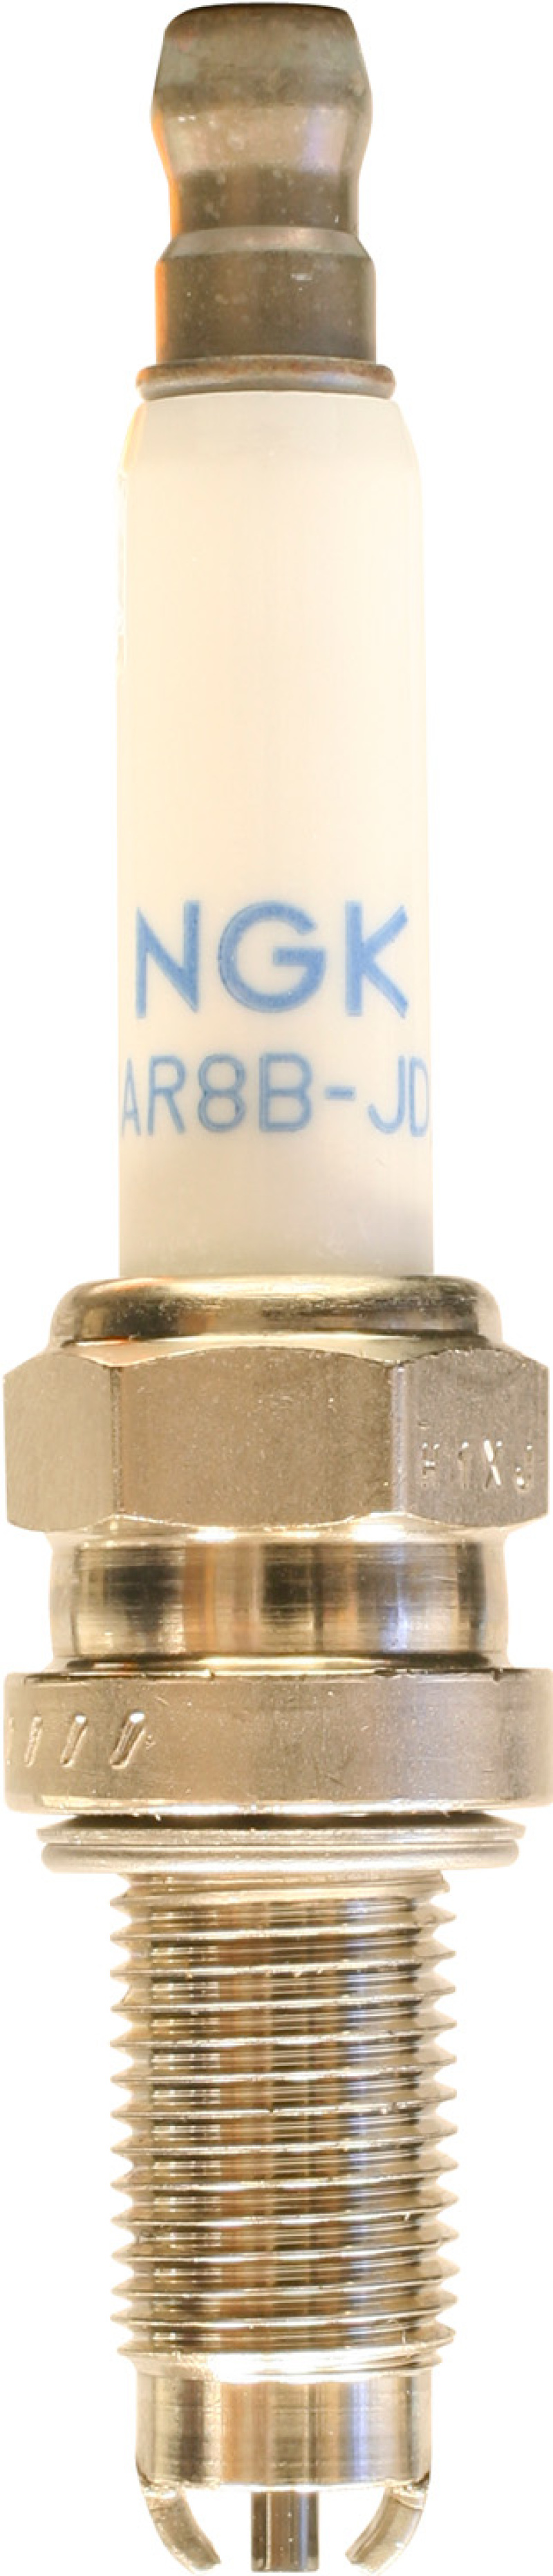 NGK Standard Spark Plug Box of 10 (MAR8B-JDS) - 8765